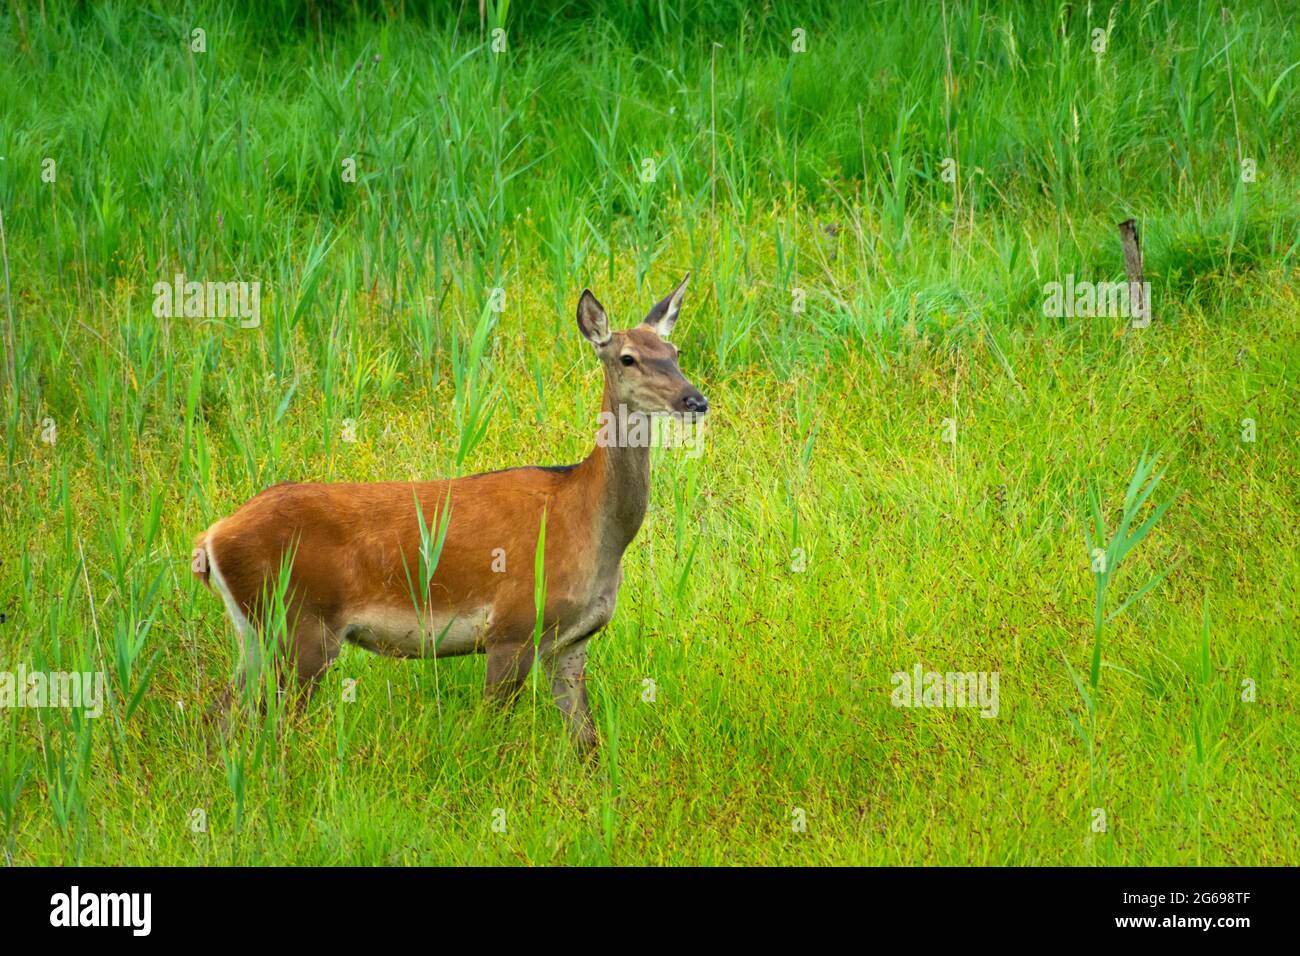 Una femmina cervo si trova in erba verde alta, vista estiva Foto Stock